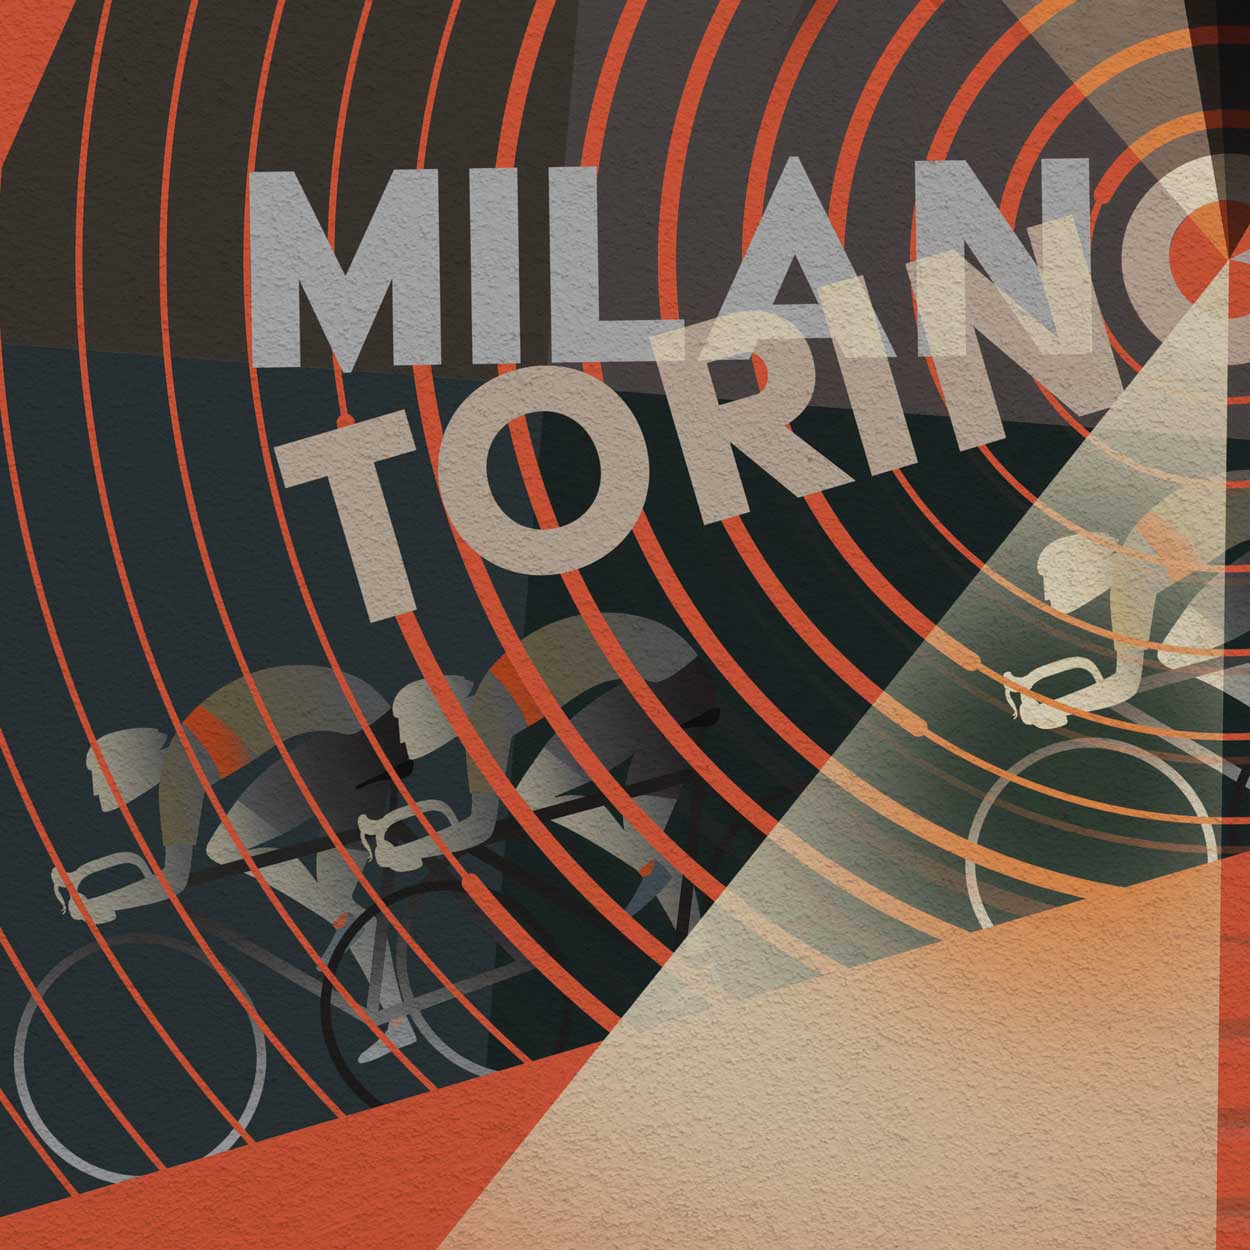 Milano Torino cycling poster